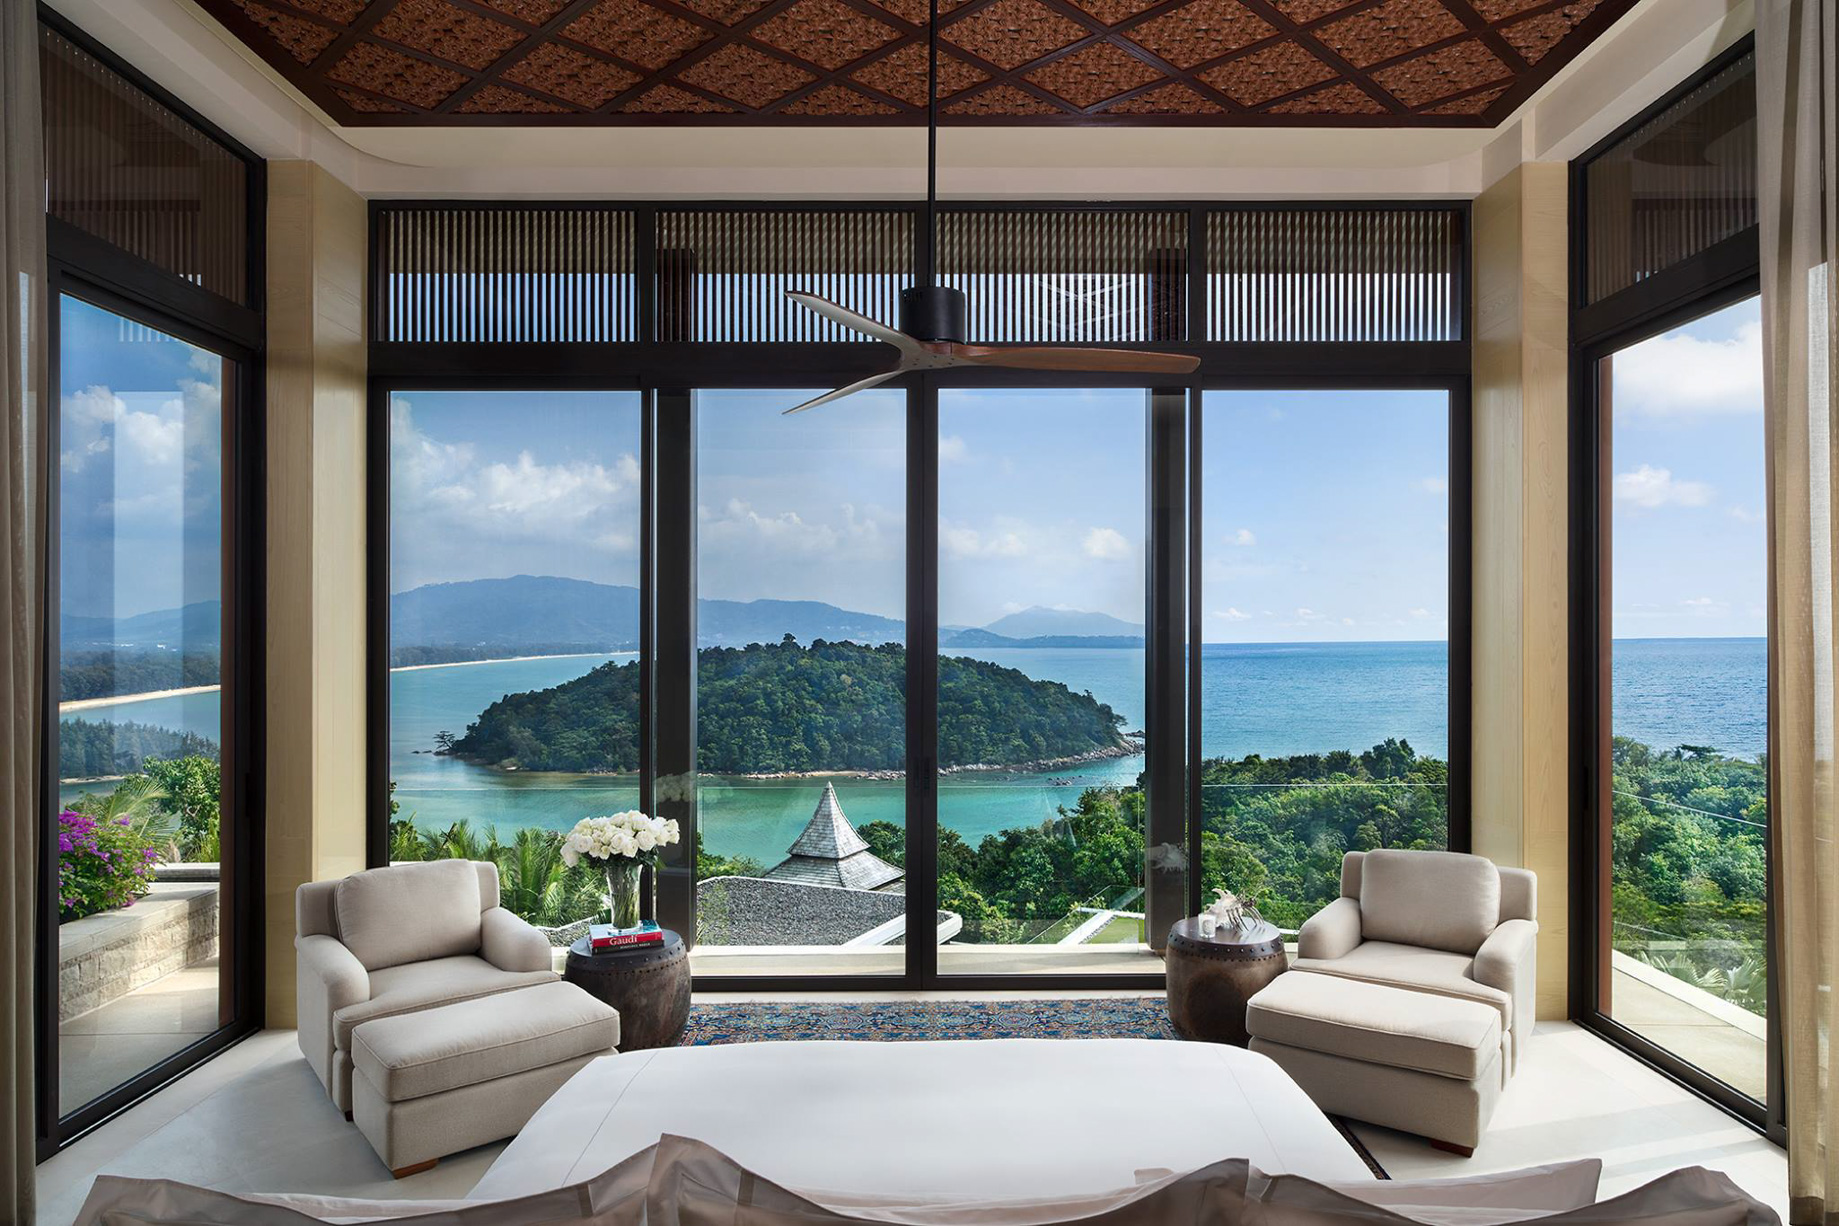 Anantara Layan Phuket Resort & Residences – Thailand – Residence Master Bedroom View